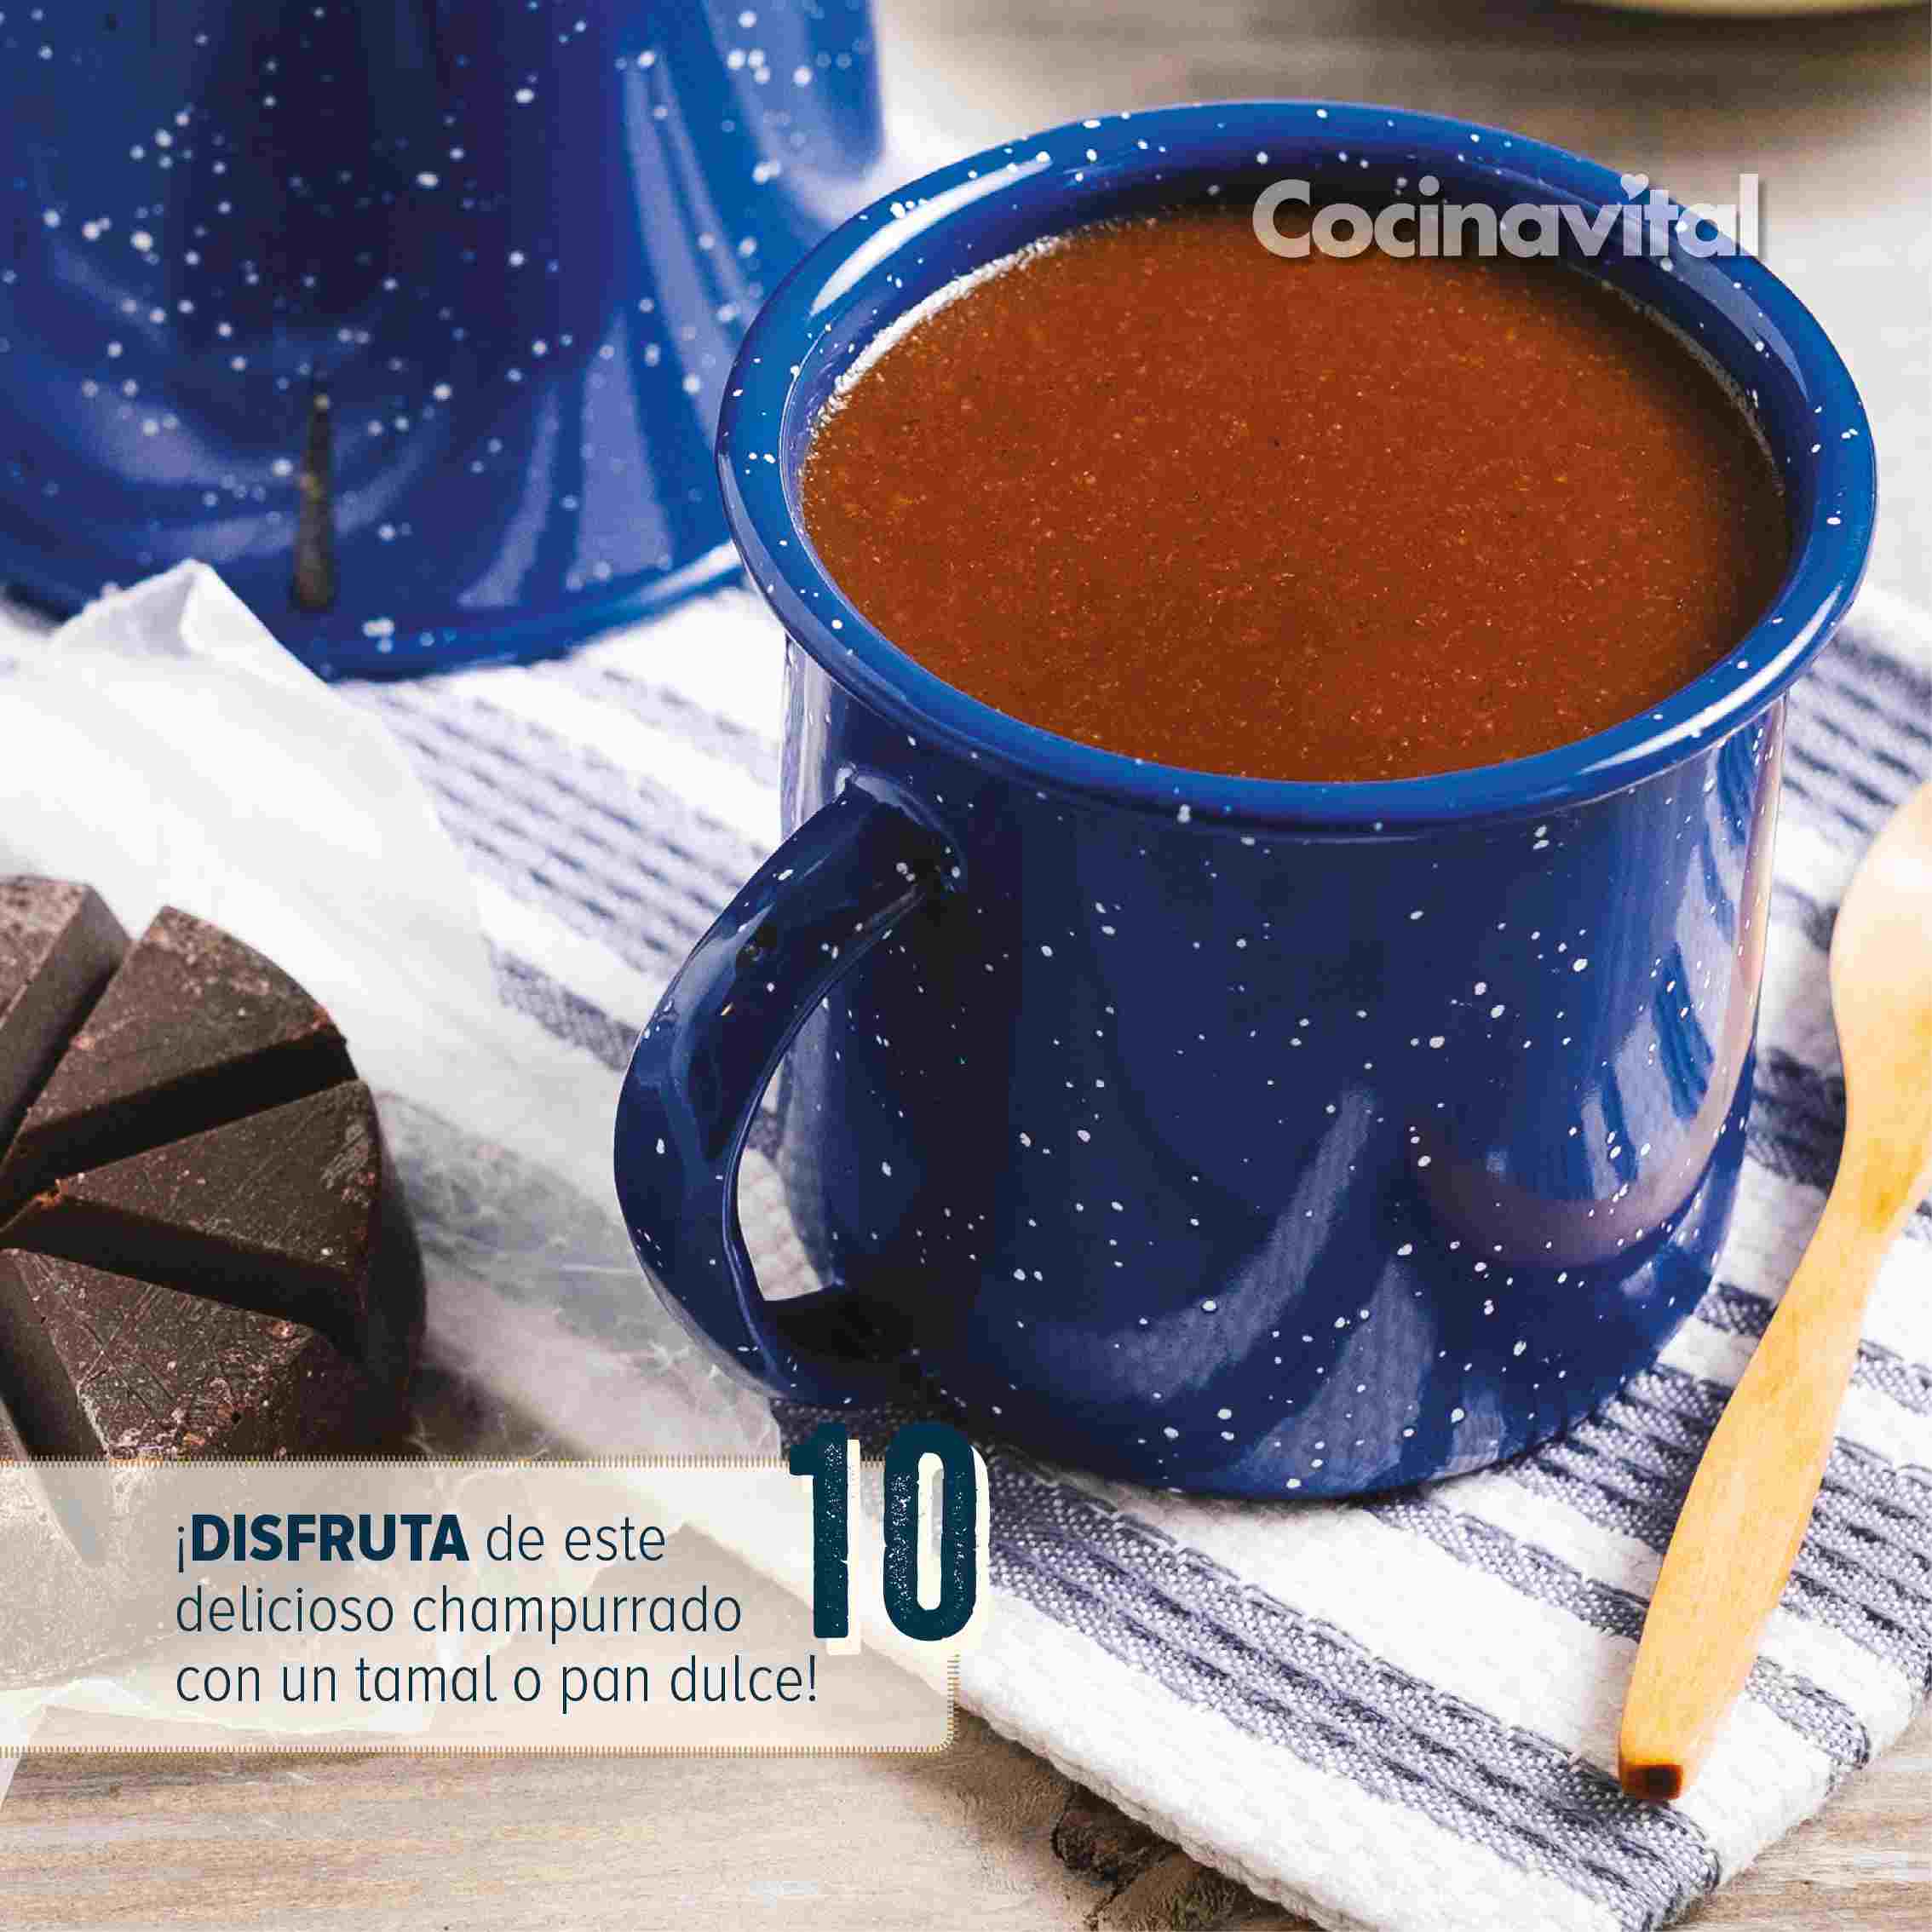 Ya sea para el desayuno o cenar algo calientito, aprende cómo hacer champurrado de chocolate mexicano 